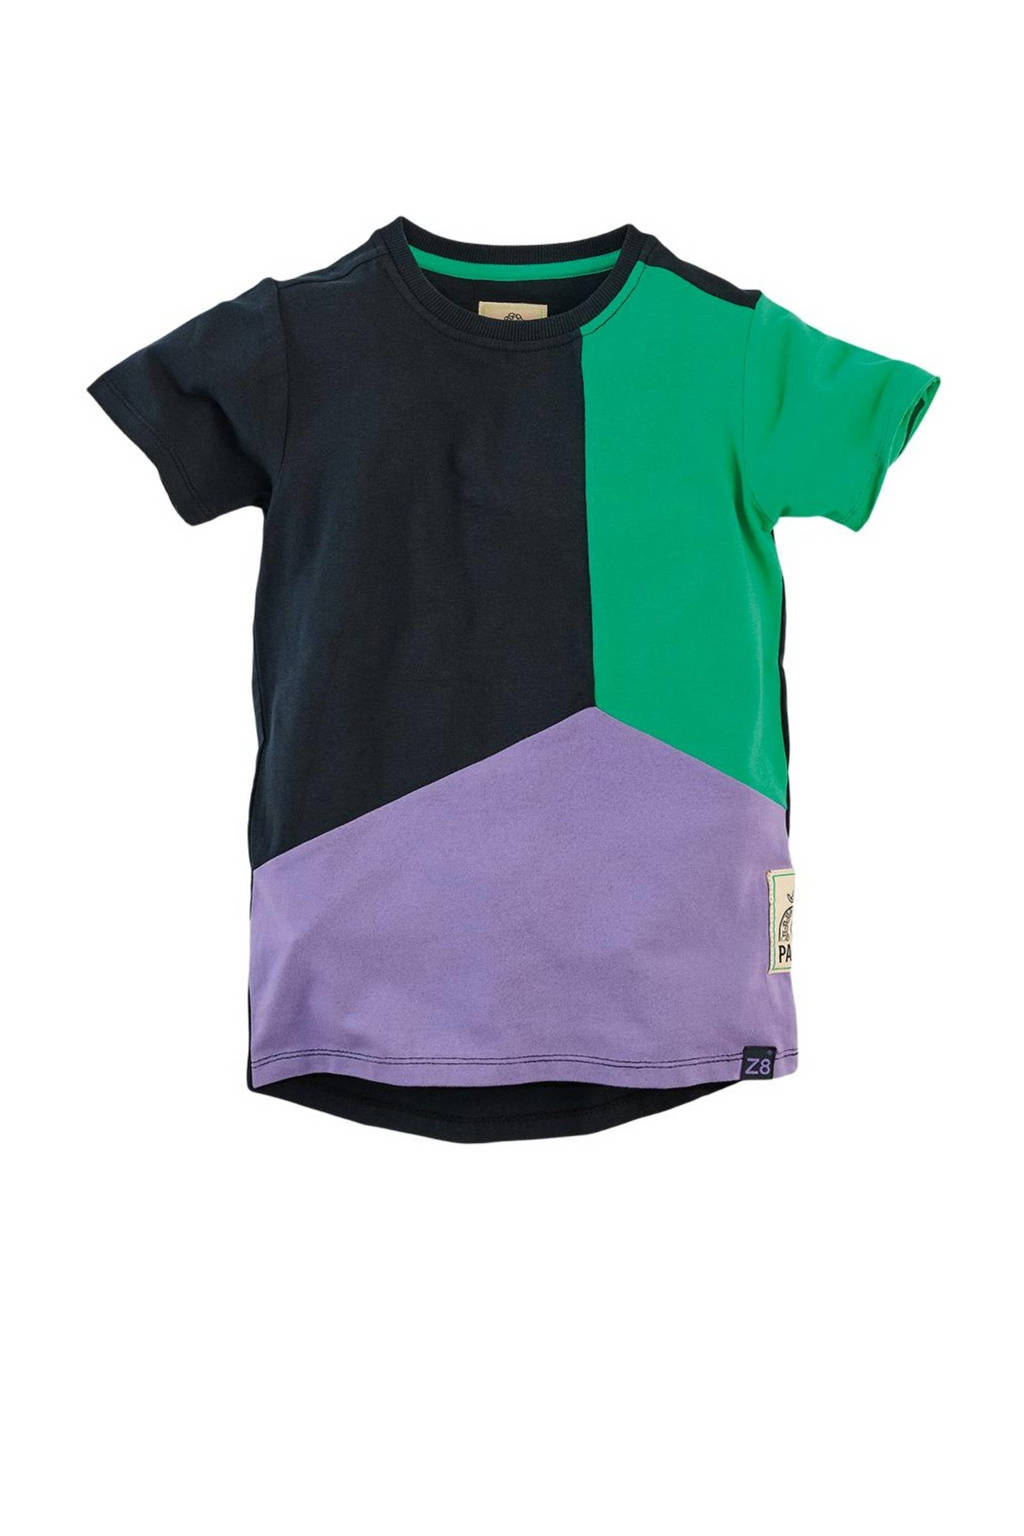 Z8 T-shirt Frankie zwart/groen/paars